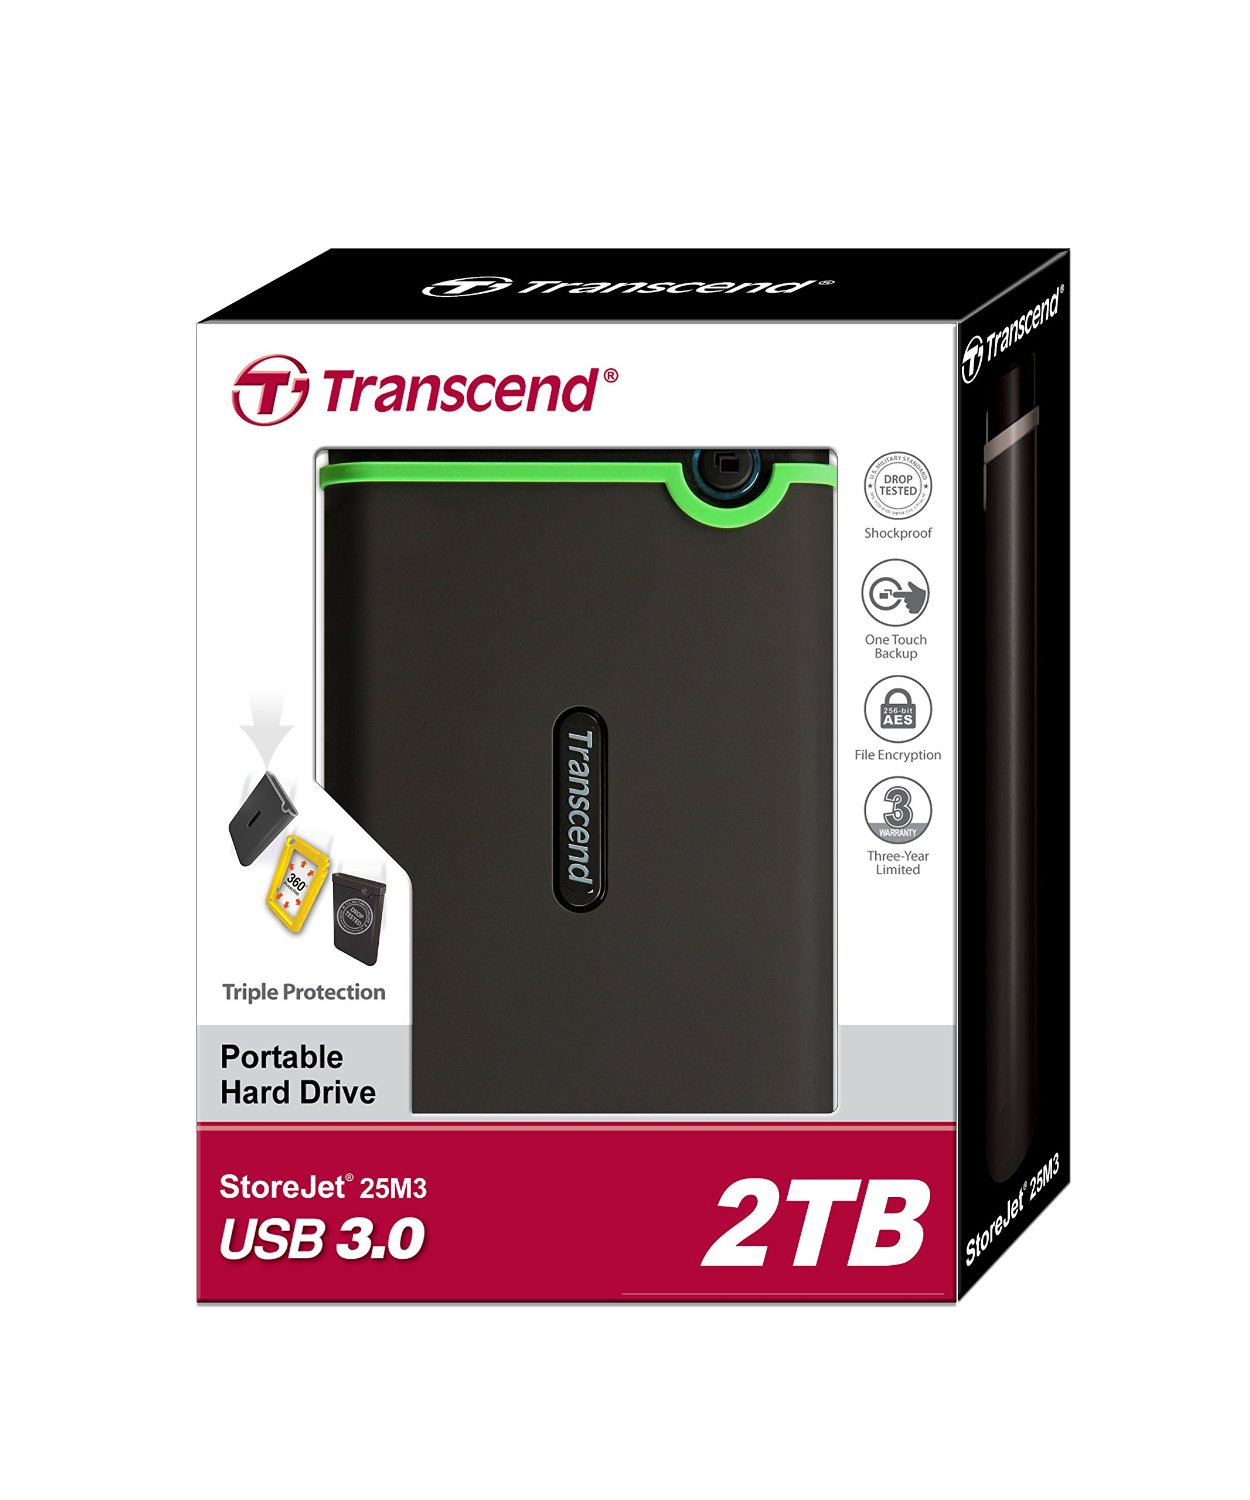 Ổ Cứng Di Động Transcend Storejet M3 2TB USB 3.0 - TS2TSJ25M3 - Hàng Chính Hãng